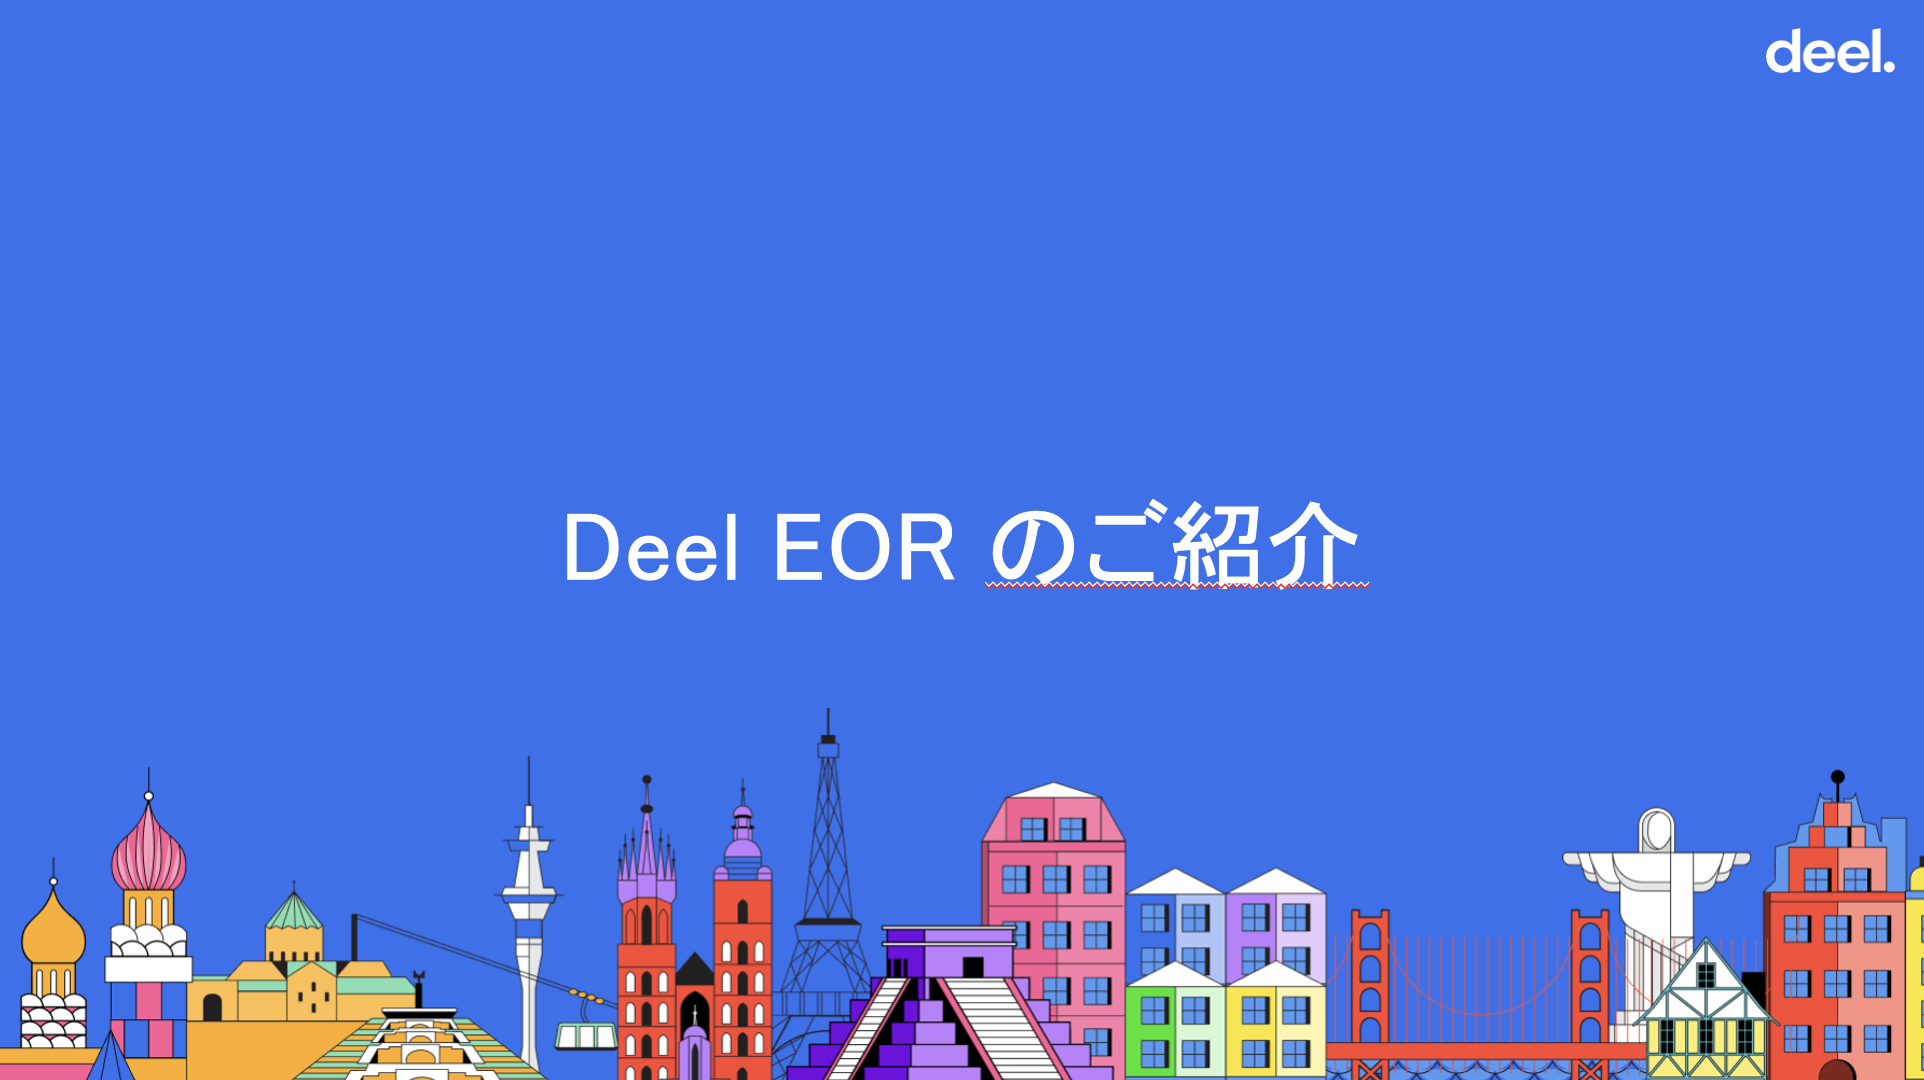 【サービス資料】Deel EOR ご紹介資料